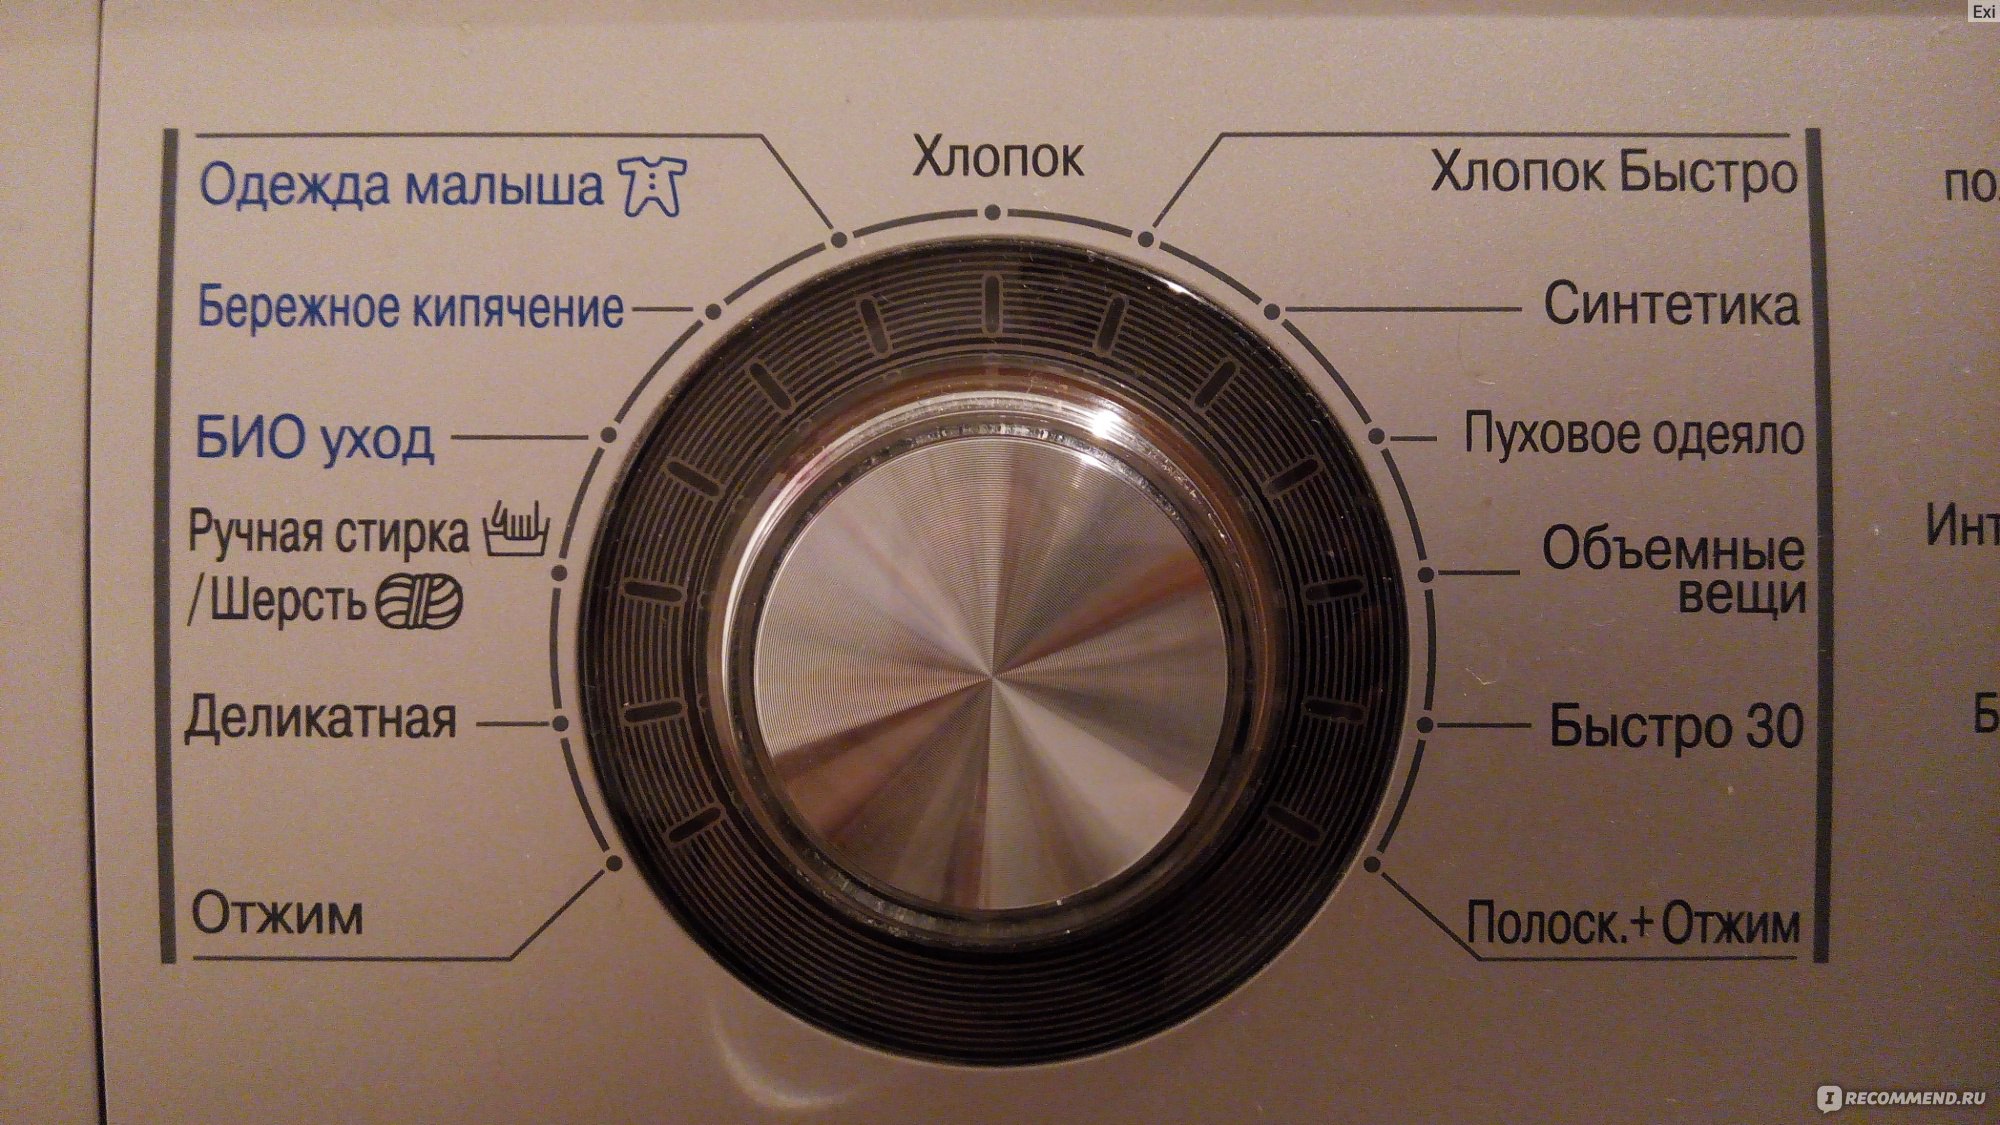 Какому бренду стиральных машин лучше доверять: делаем выбор между стиральной машиной LG и Samsung